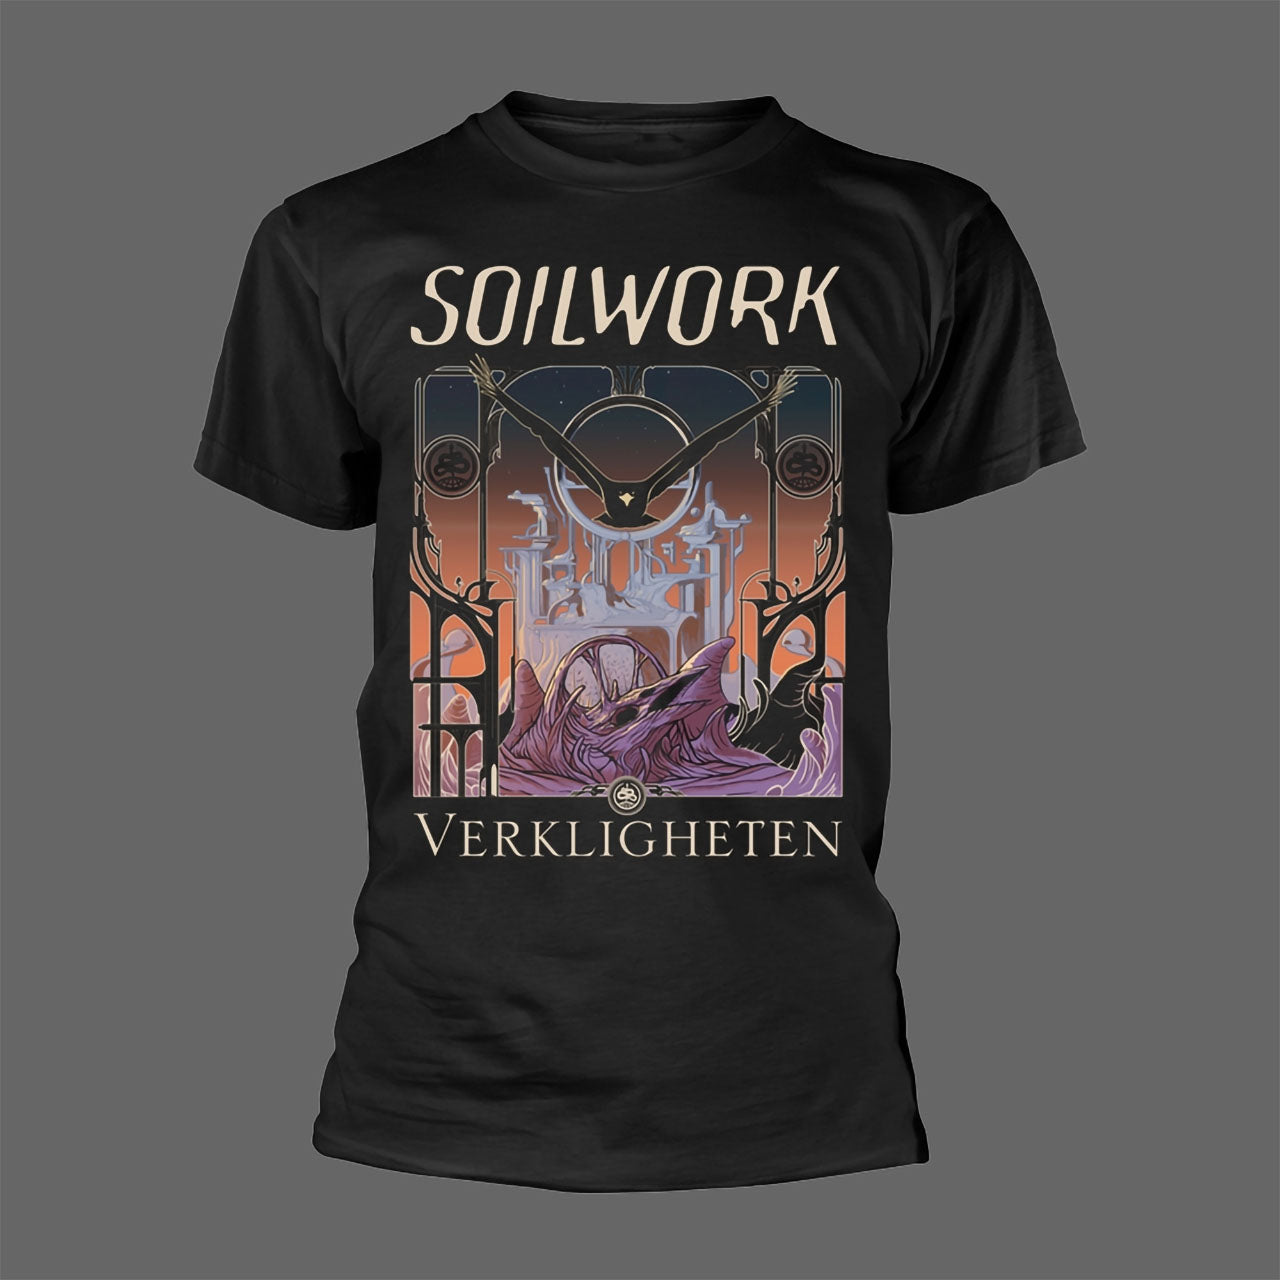 Soilwork - Verkligheten (T-Shirt)